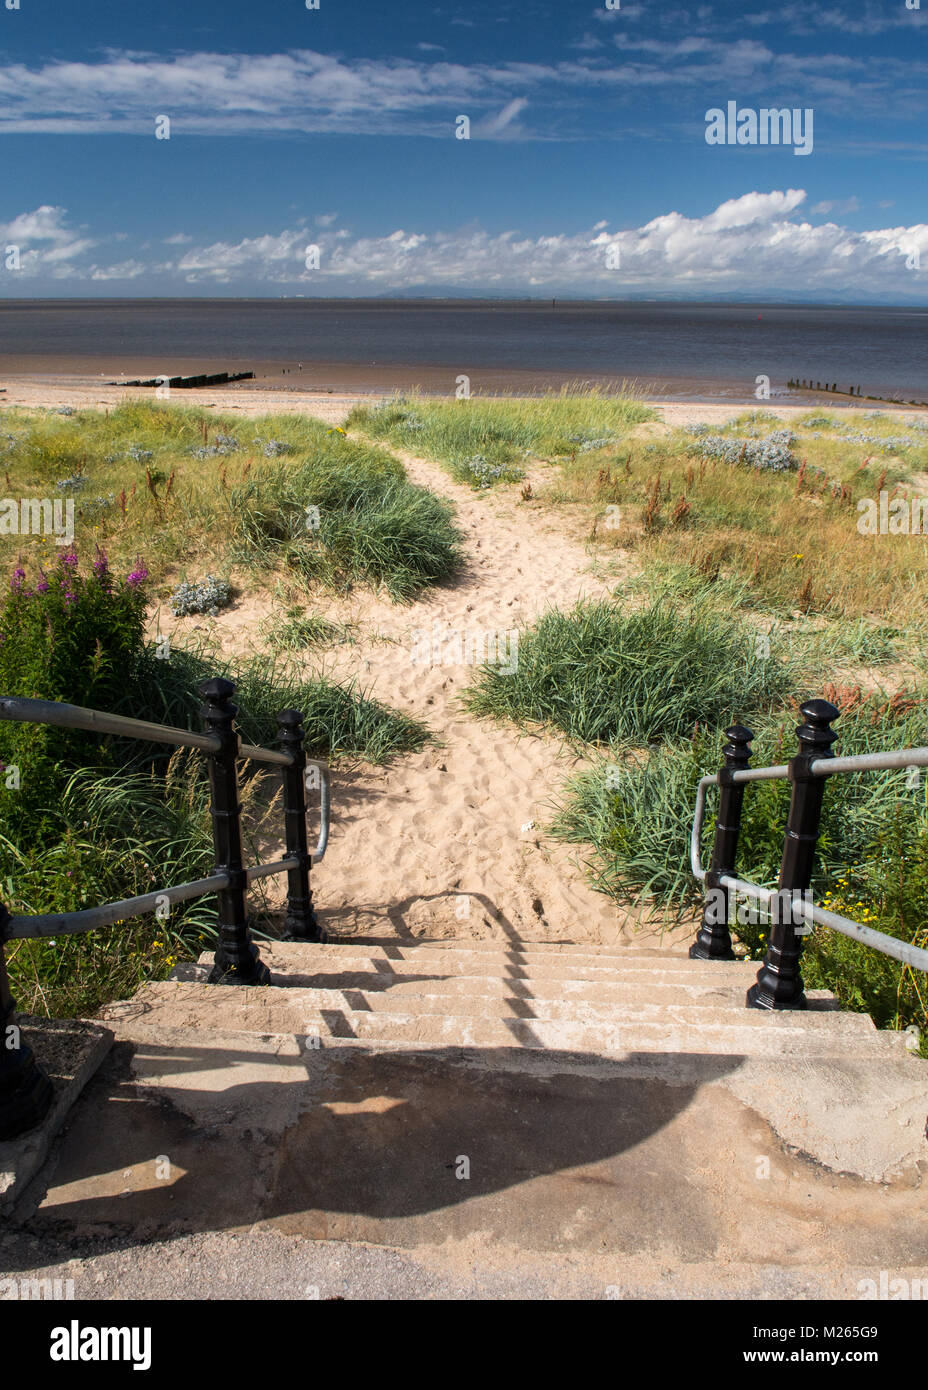 Los pasos que conducen hasta la playa y dunas de arena en Fleetwood, cerca de Blackpool, mirando hacia la bahía de Morecambe, y el Mar de Irlanda. Un camino conduce a través de la s Foto de stock